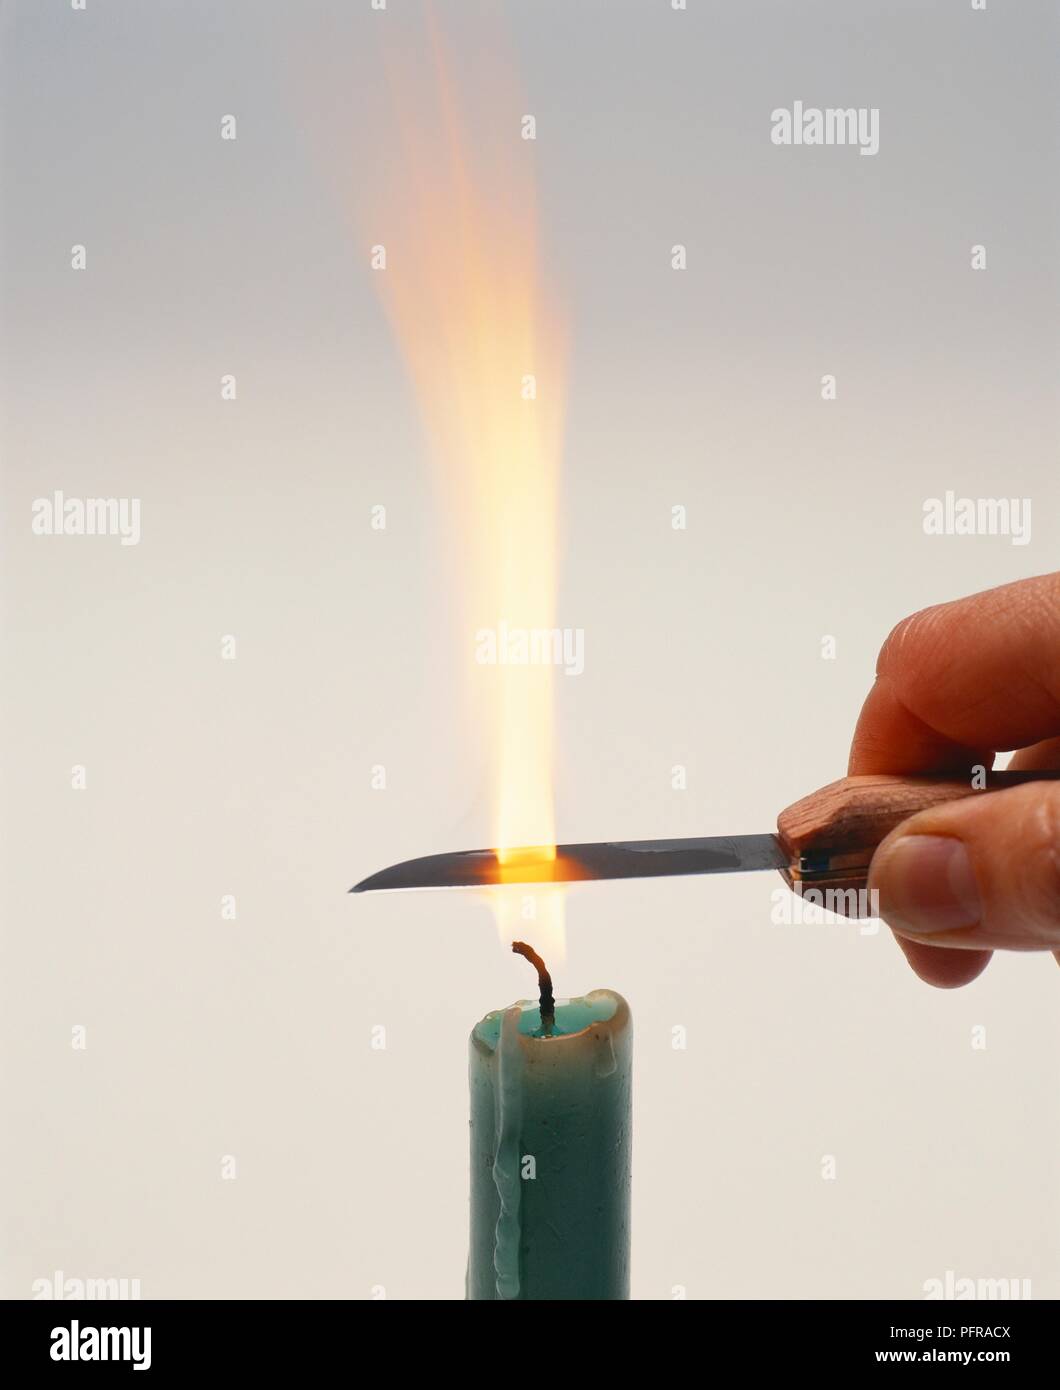 Mano sujetando navaja en la llama de una vela para esterilizar blade  Fotografía de stock - Alamy